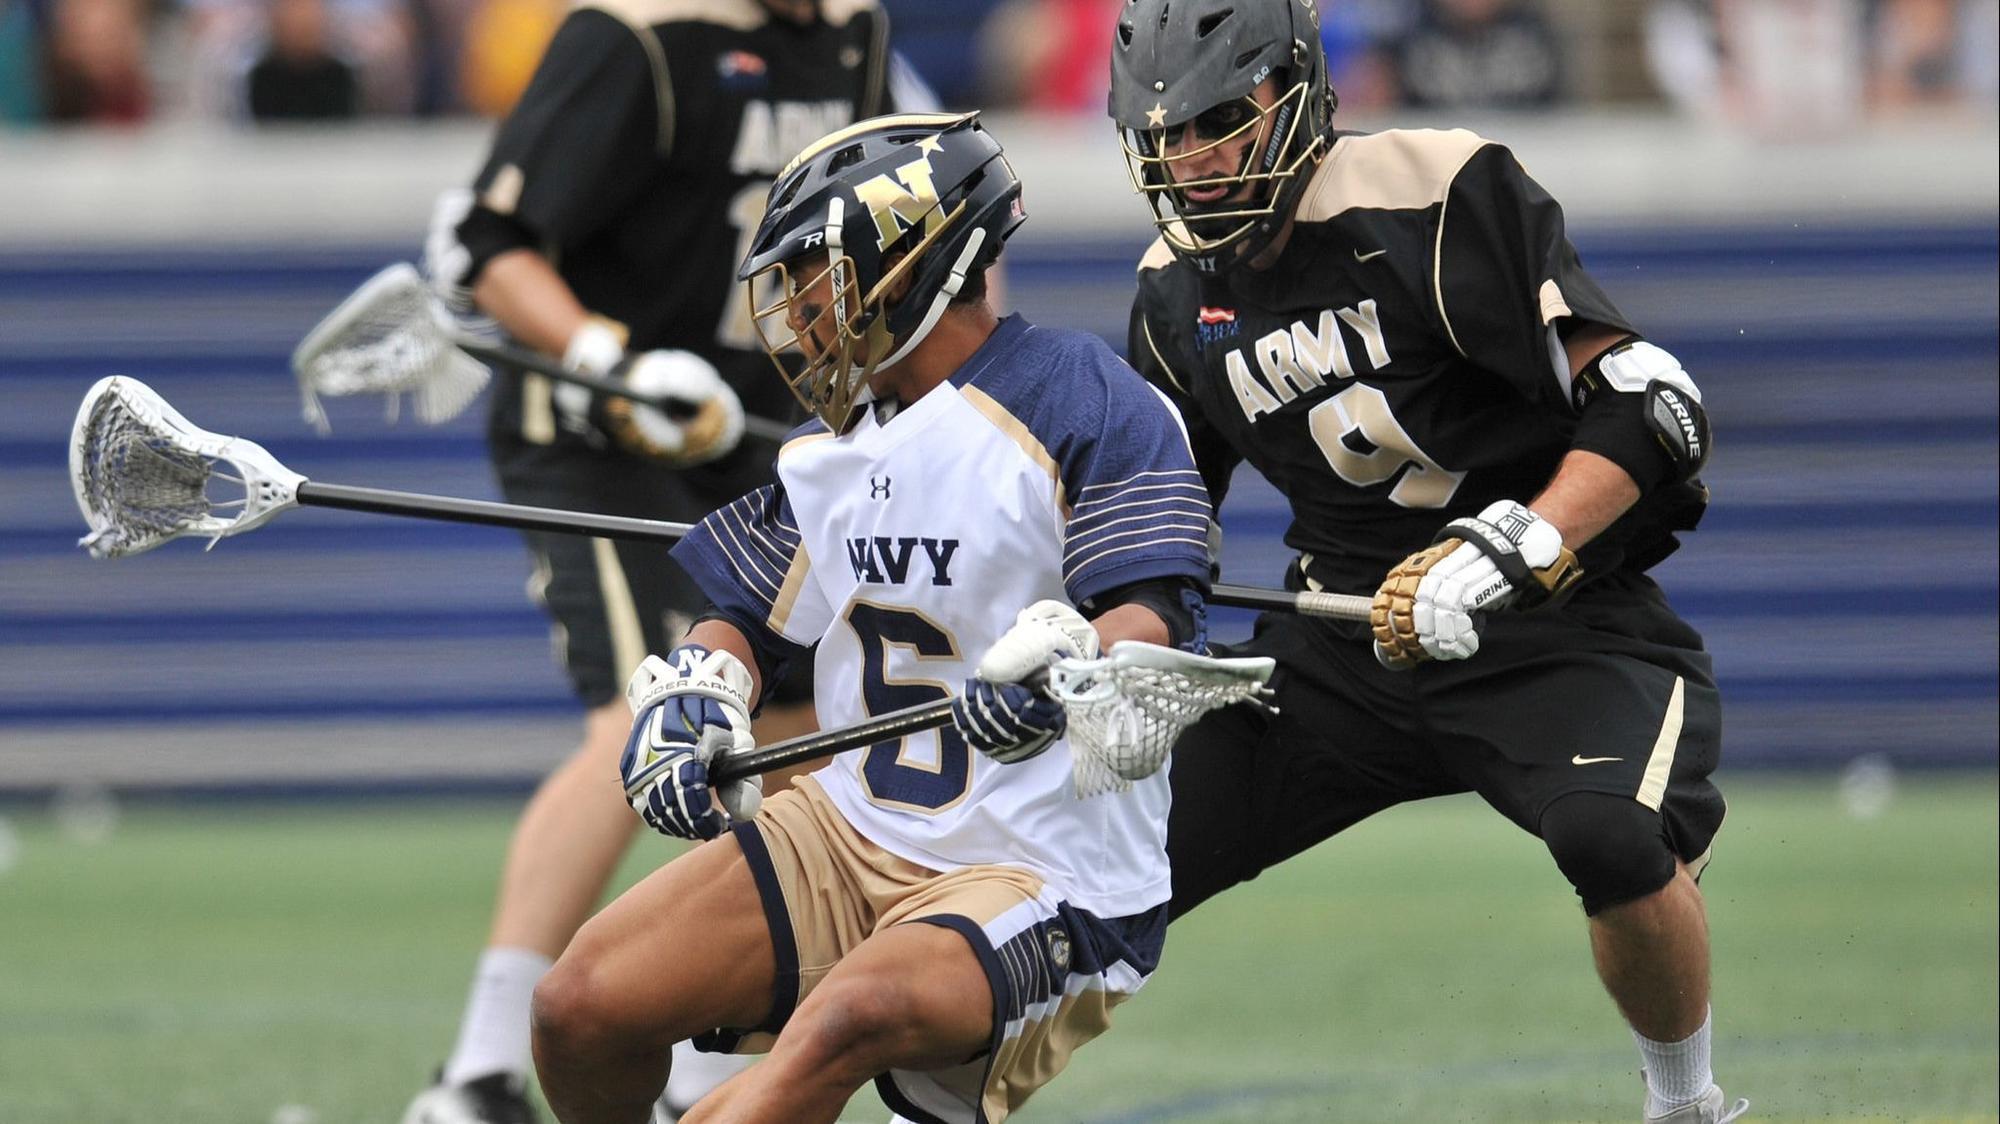 Navy seniors seeking Star game sweep of Army in men's lacrosse